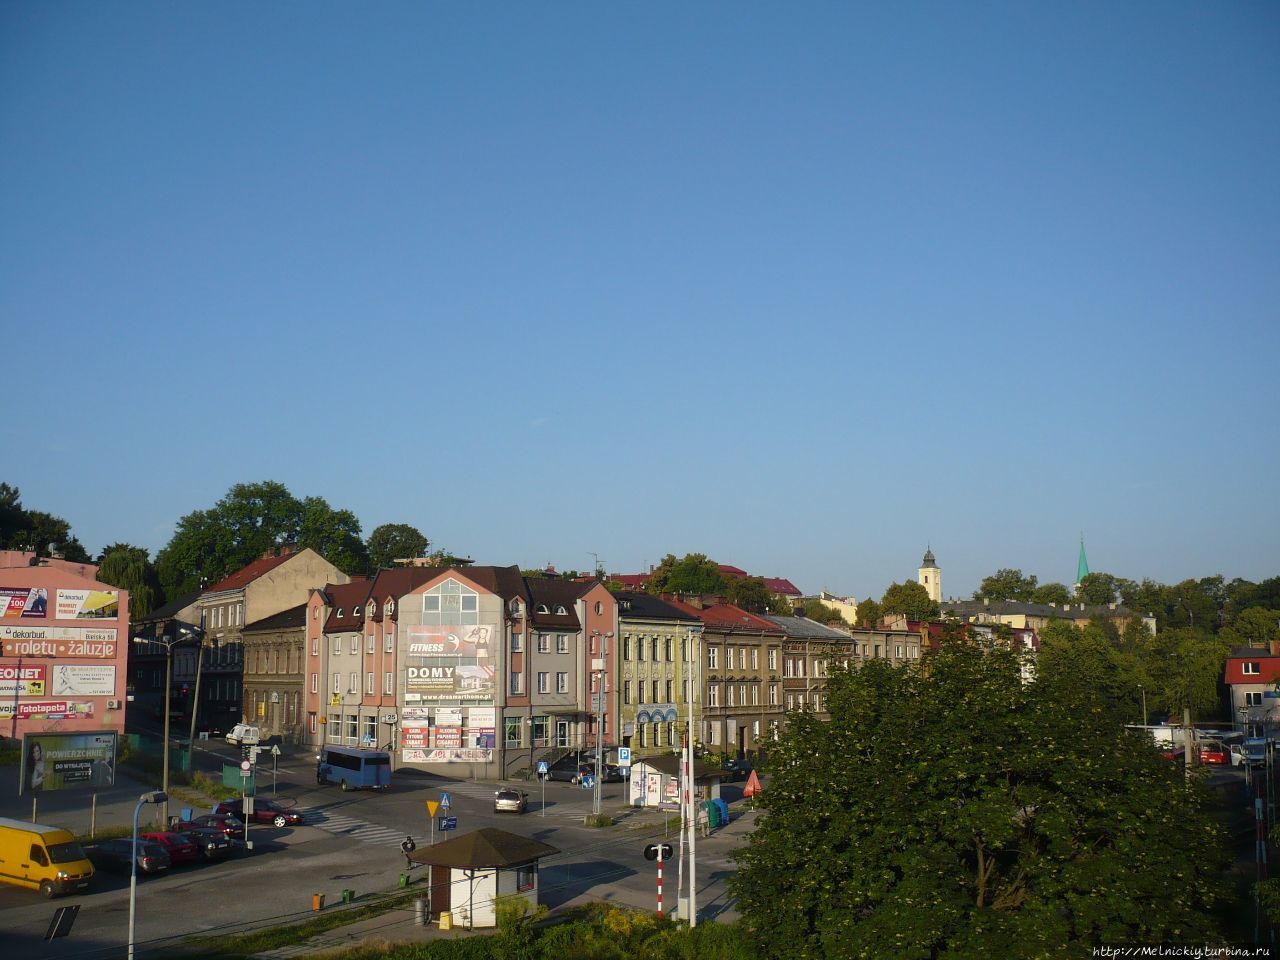 Несколько фото пограничного городка Цешин, Польша